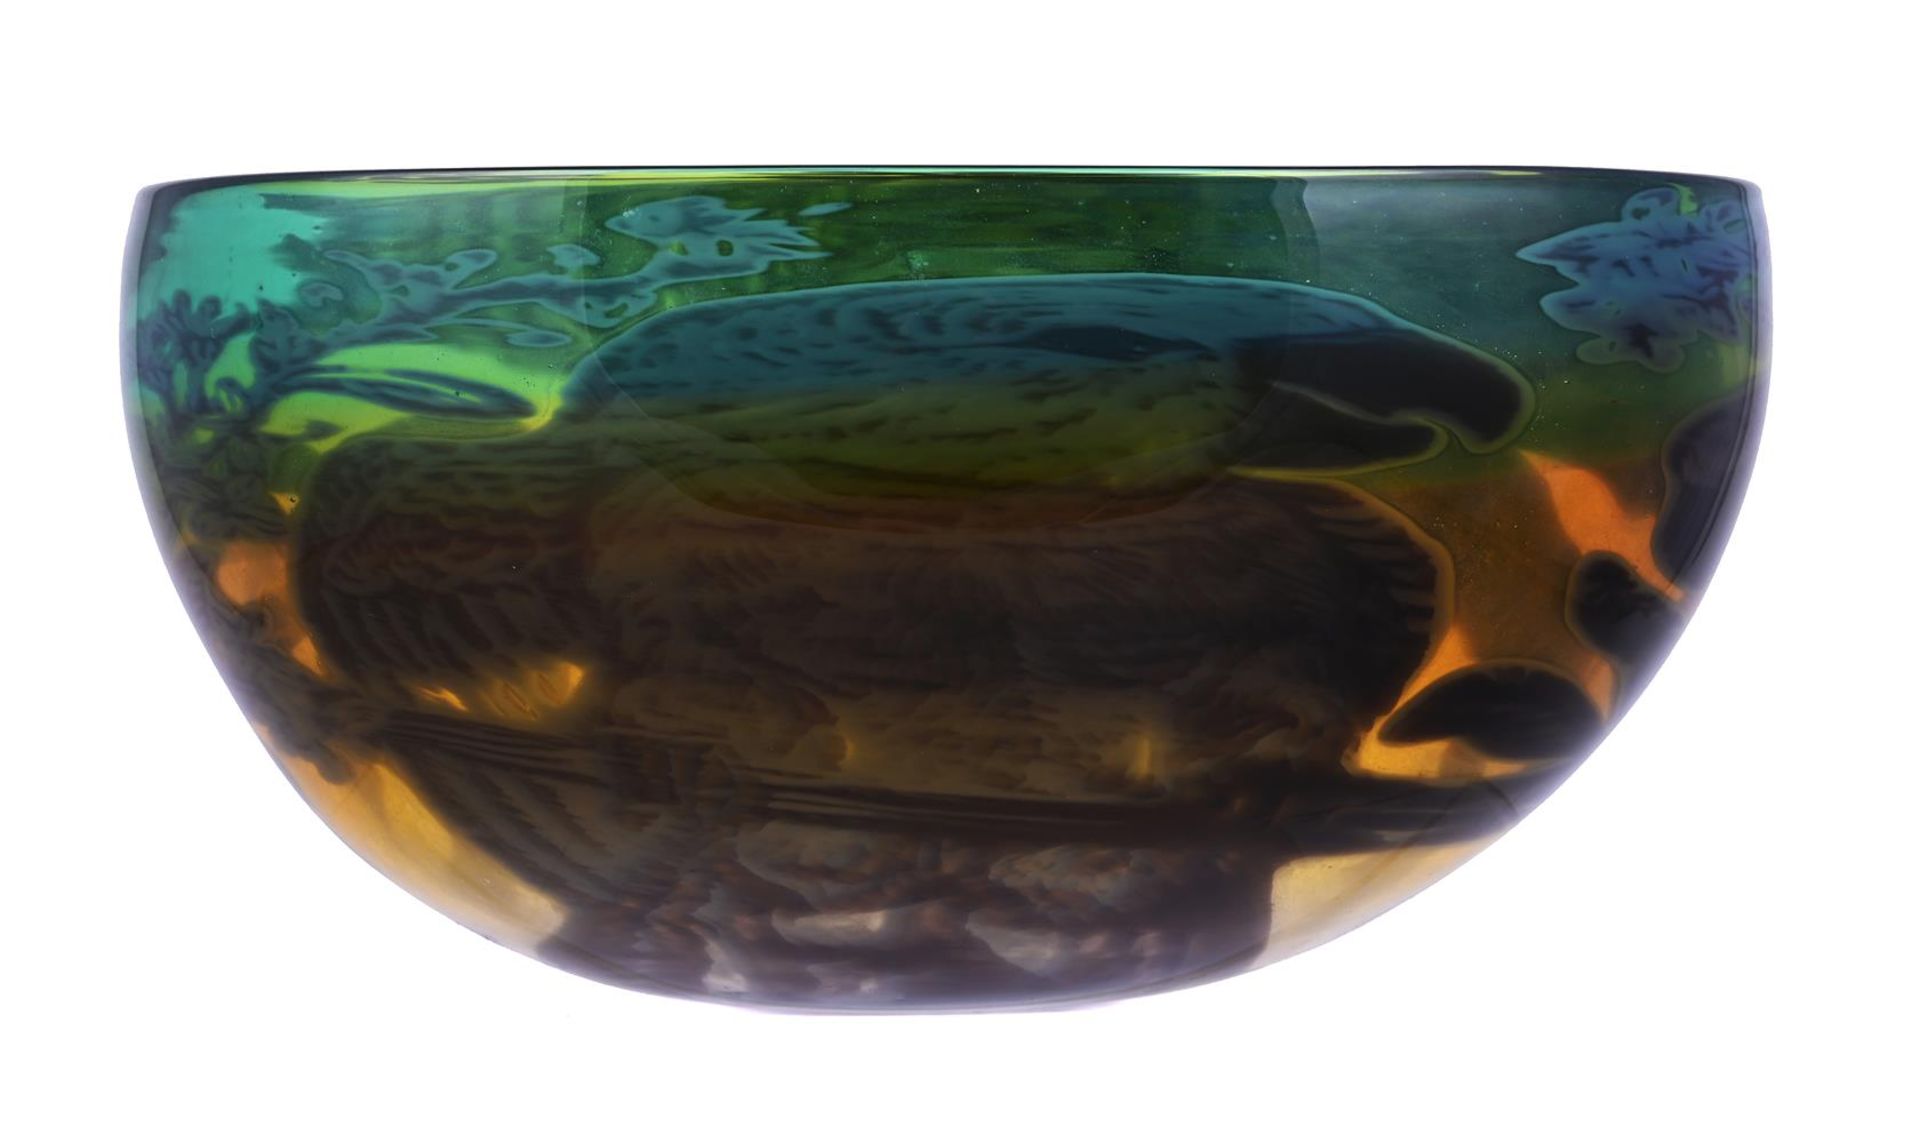 λ HELEN MILLARD, A CASED GLASS BOWL - Image 2 of 2